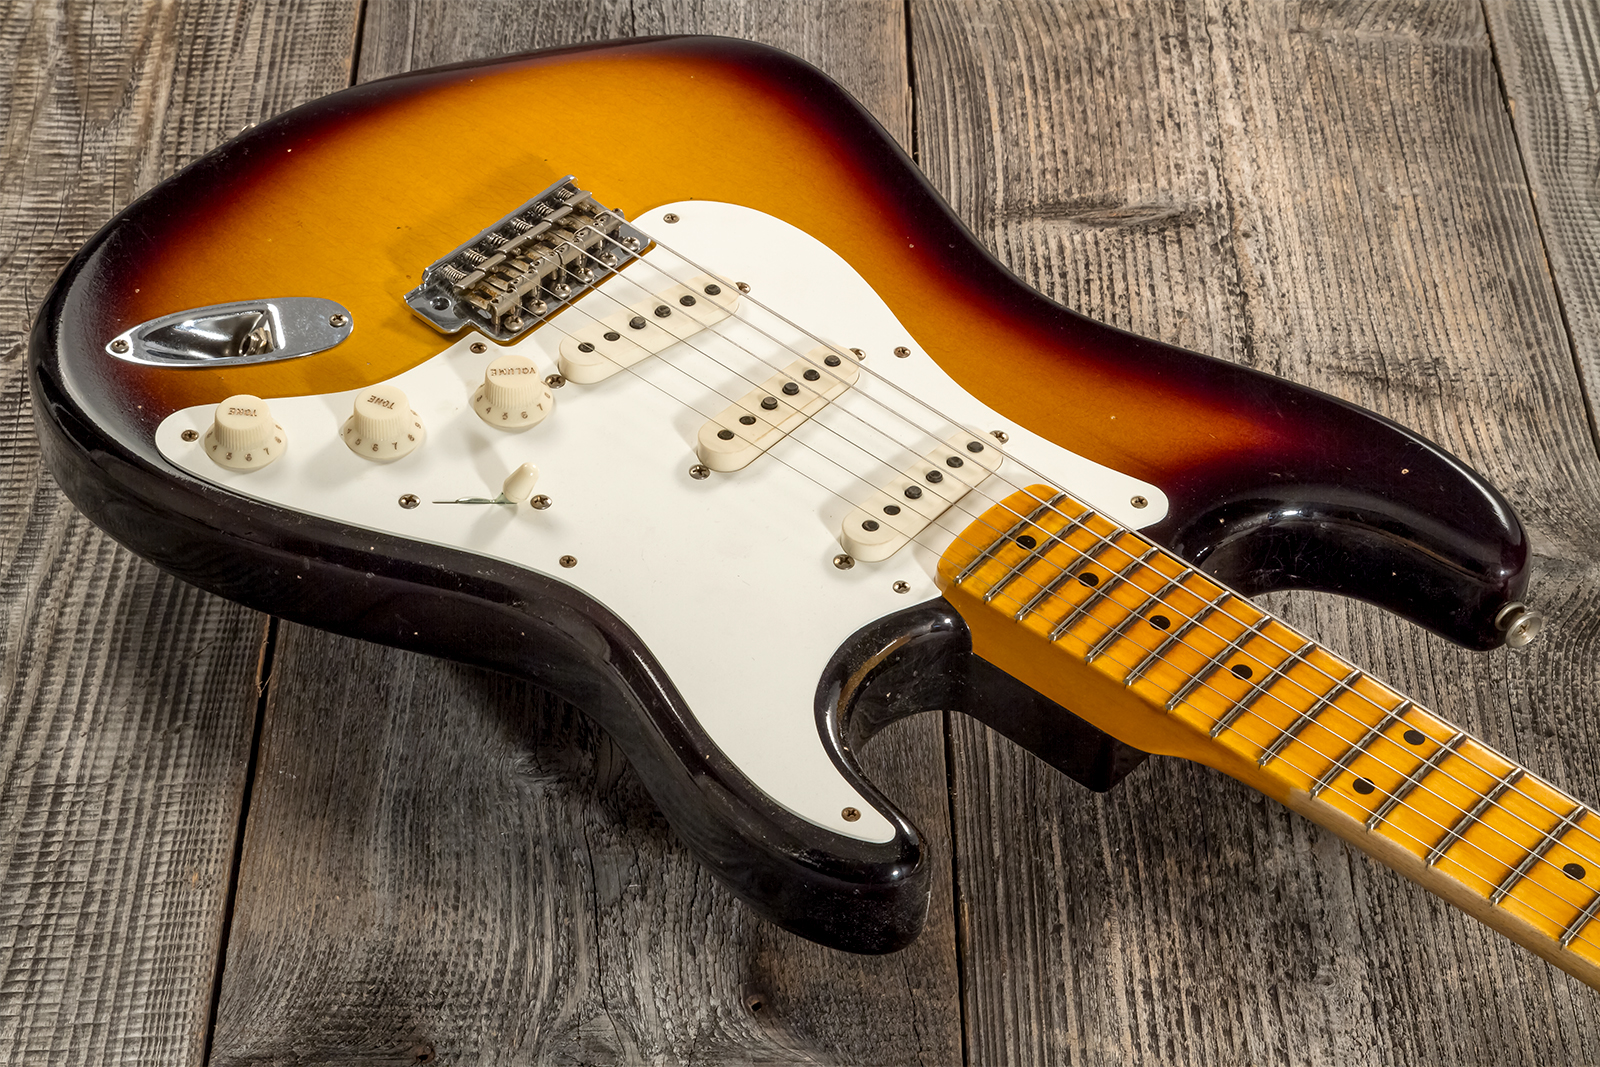 Fender Custom Shop Strat 1956 3s Trem Mn #cz571884 - Journeyman Relic Aged 2-color Sunburst - E-Gitarre in Str-Form - Variation 2